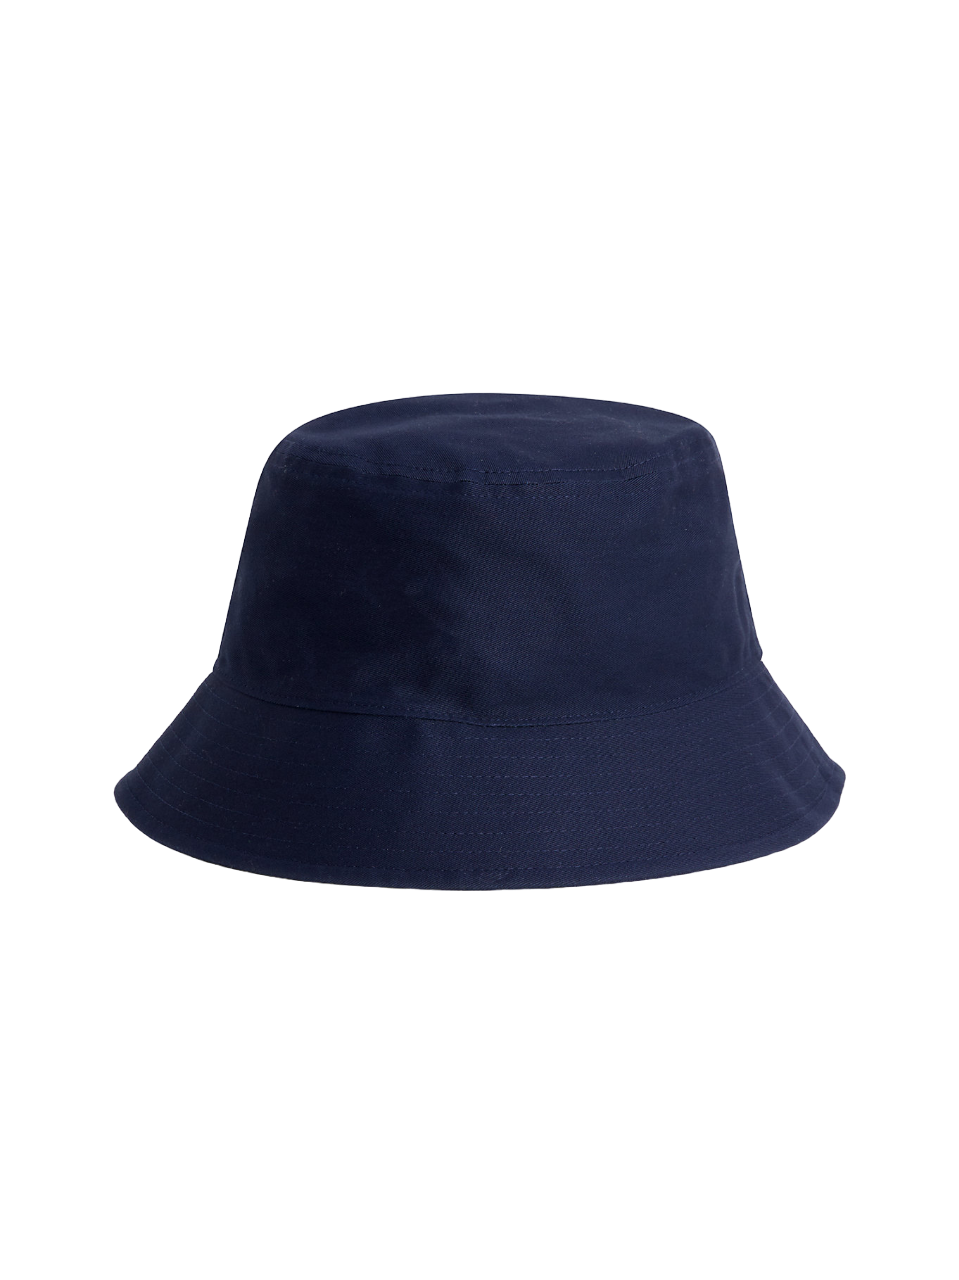 Tommy Jeans Sport Bucket Hat, Fischerhut, Blau | Galamondo